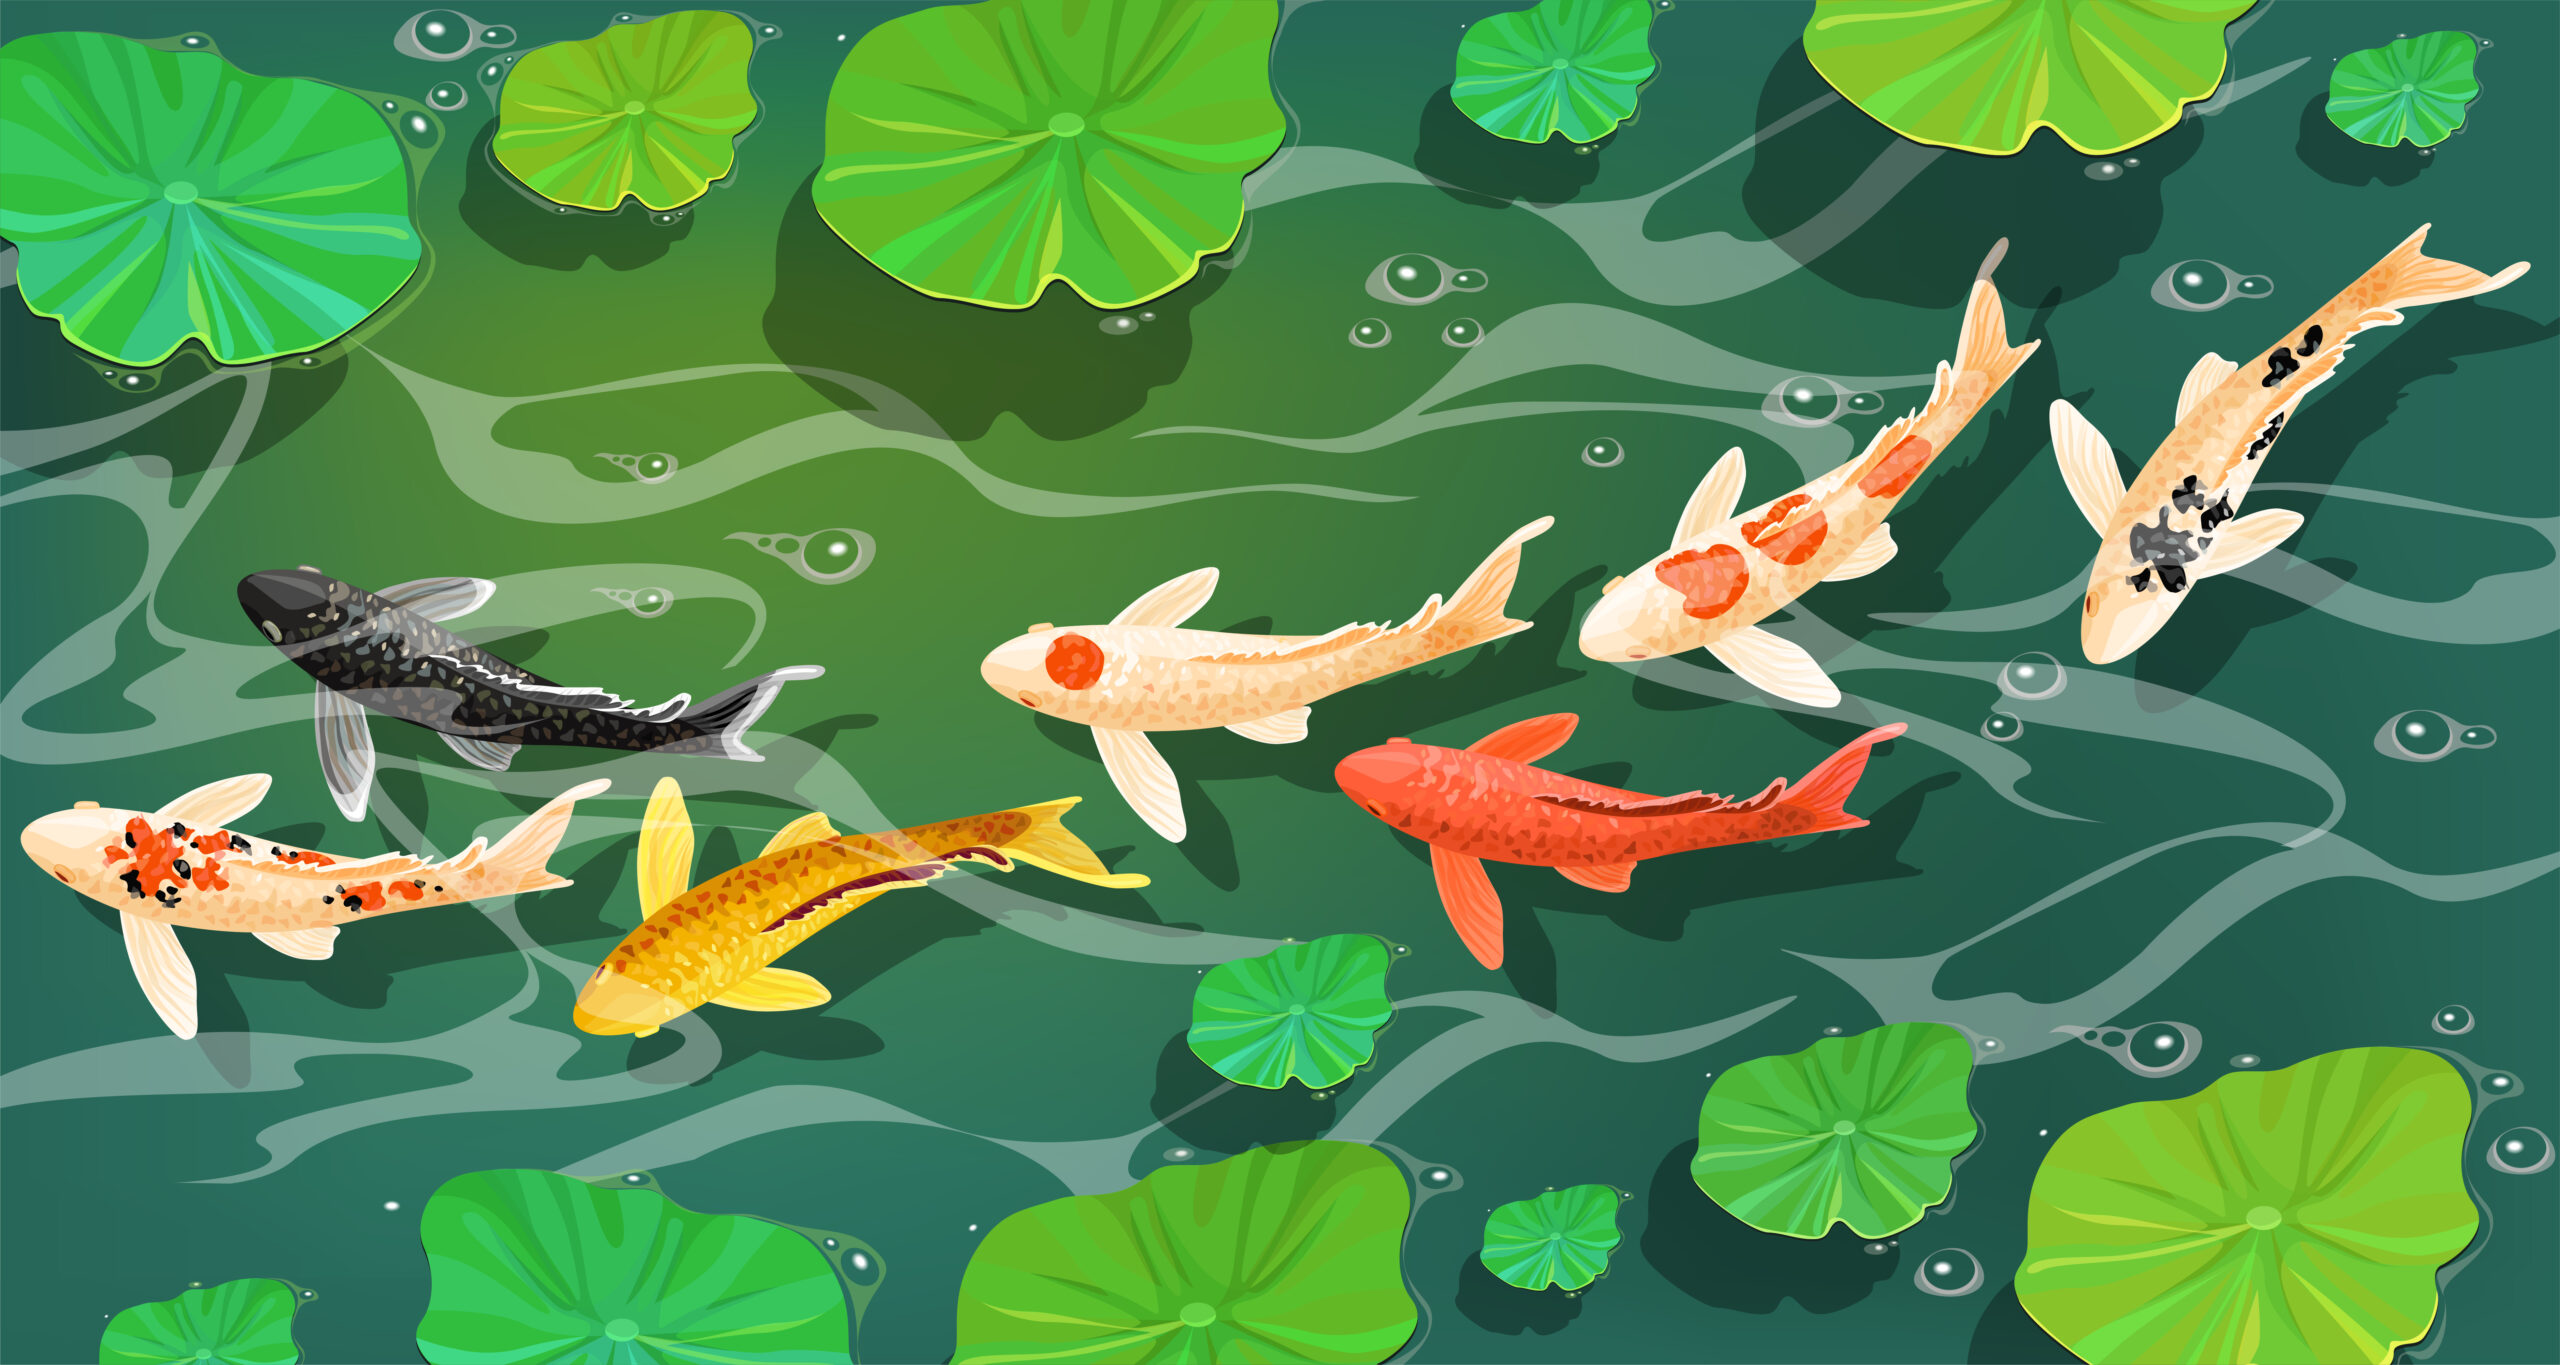 池で鯉が泳いでいる様子を描いたイラスト